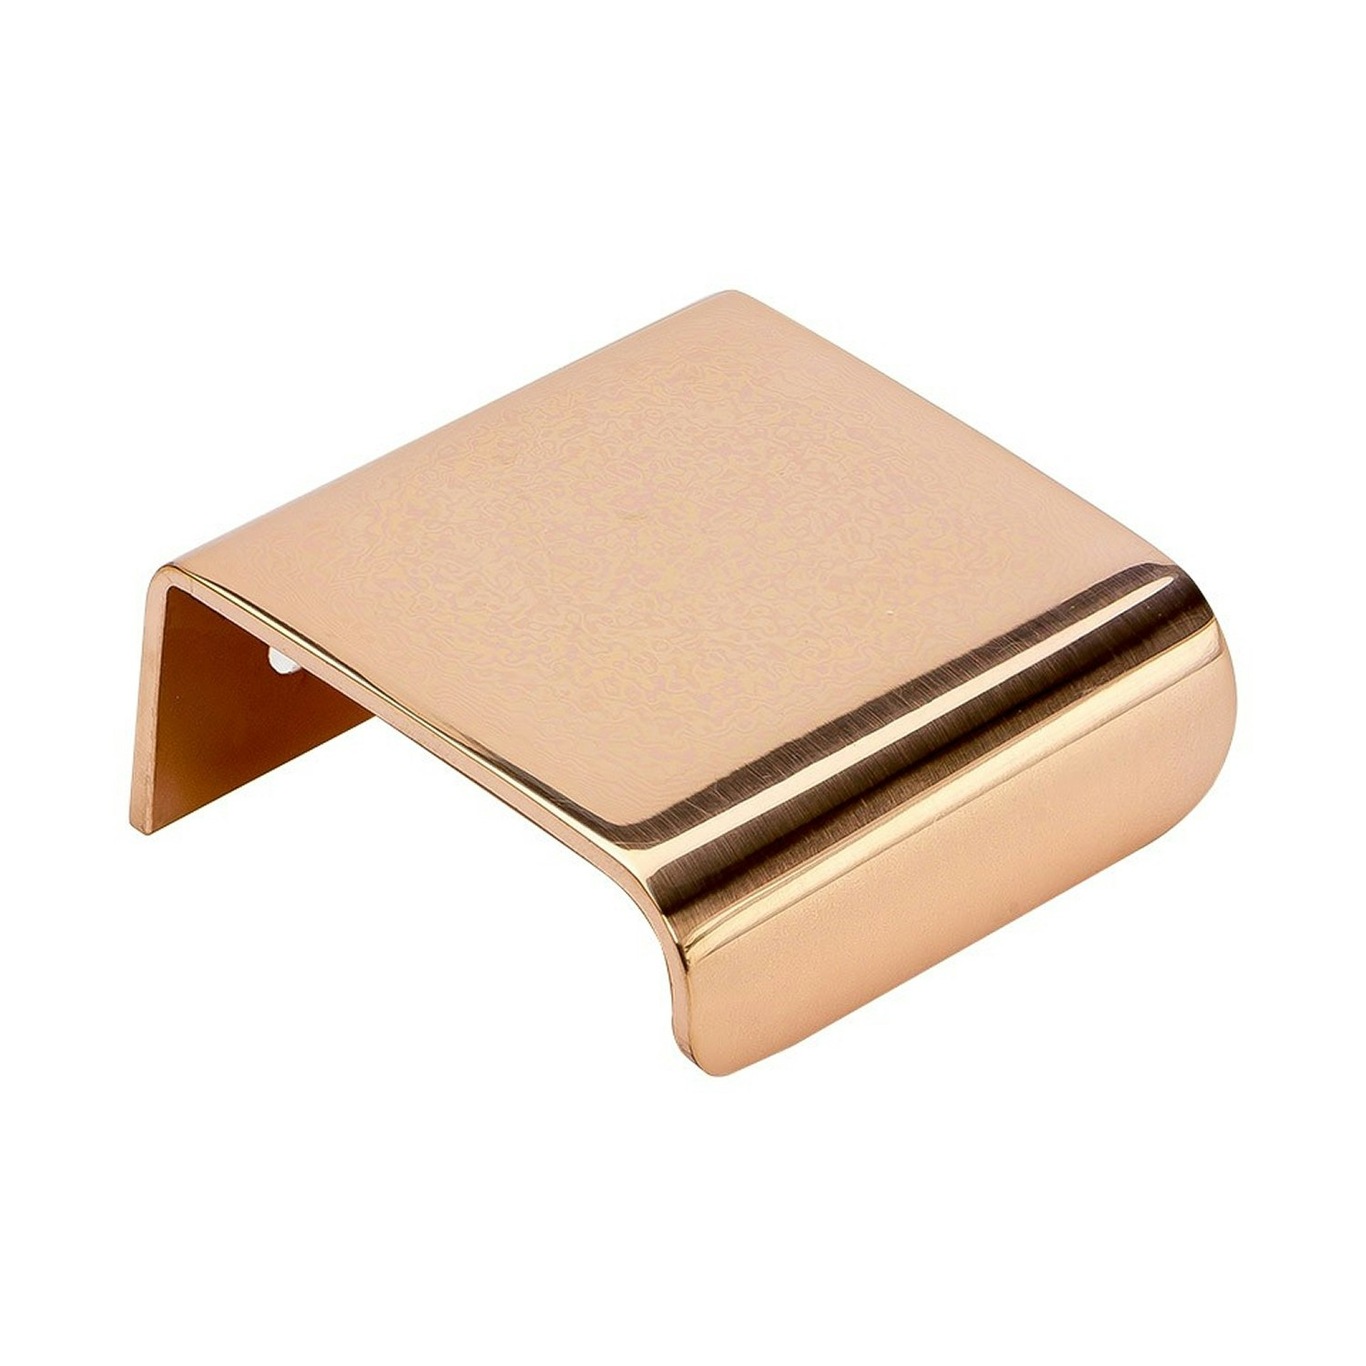 https://royaldesign.com/image/2/beslag-design-lip-handle-polished-copper-0?w=800&quality=80